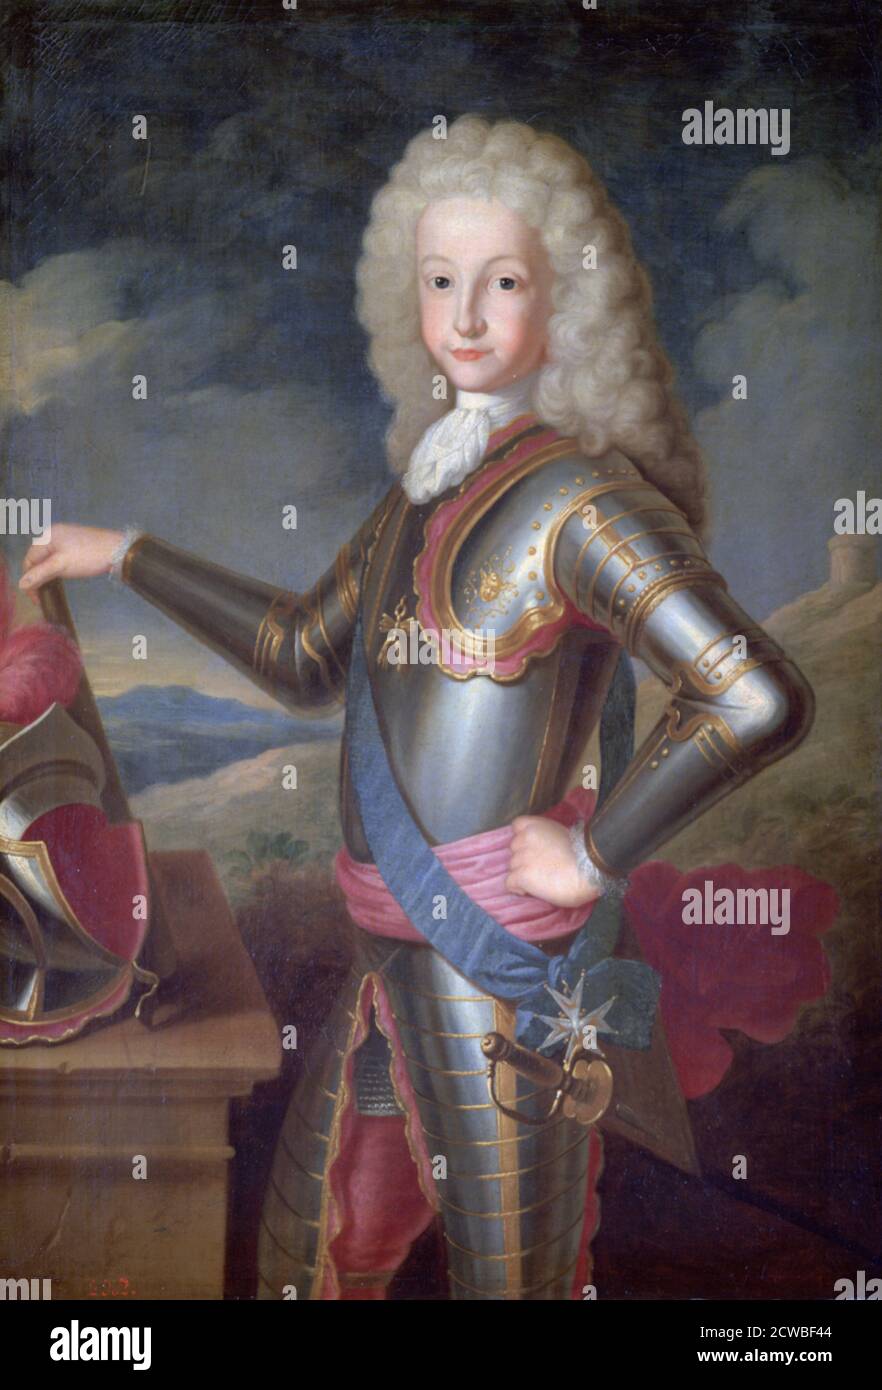 Ludwig I., Prinz von Asturien, König von Spanien', c1700-1730. Künstler: Michel-Ange Houasse. Michel Ange Houasse (1680-1730) war ein französischer Maler, dessen Karriere am Hof von Philipp V. von Spanien verbracht wurde. Stockfoto